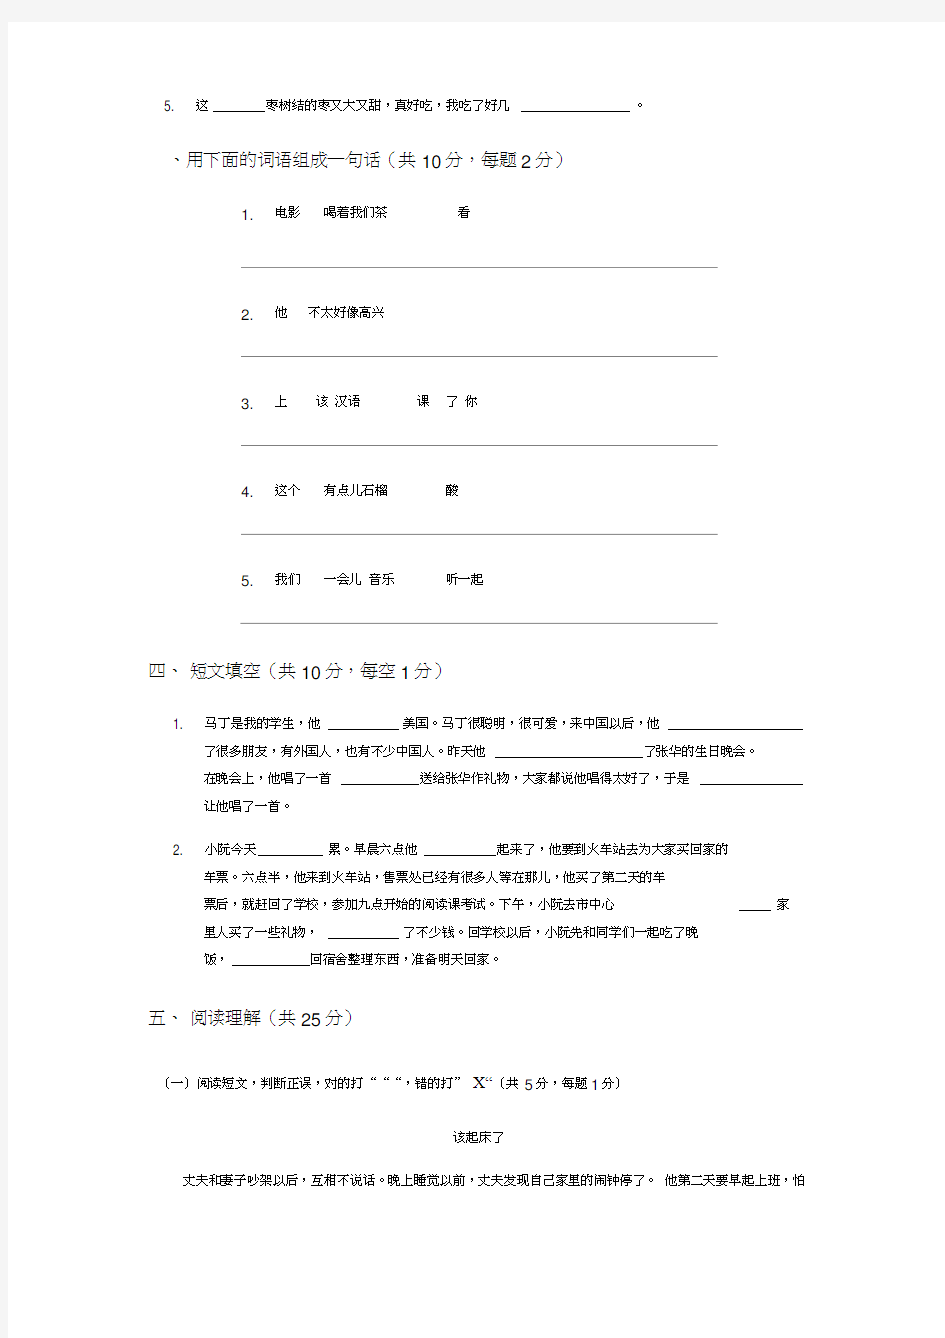 (完整版)初级汉语阅读试卷